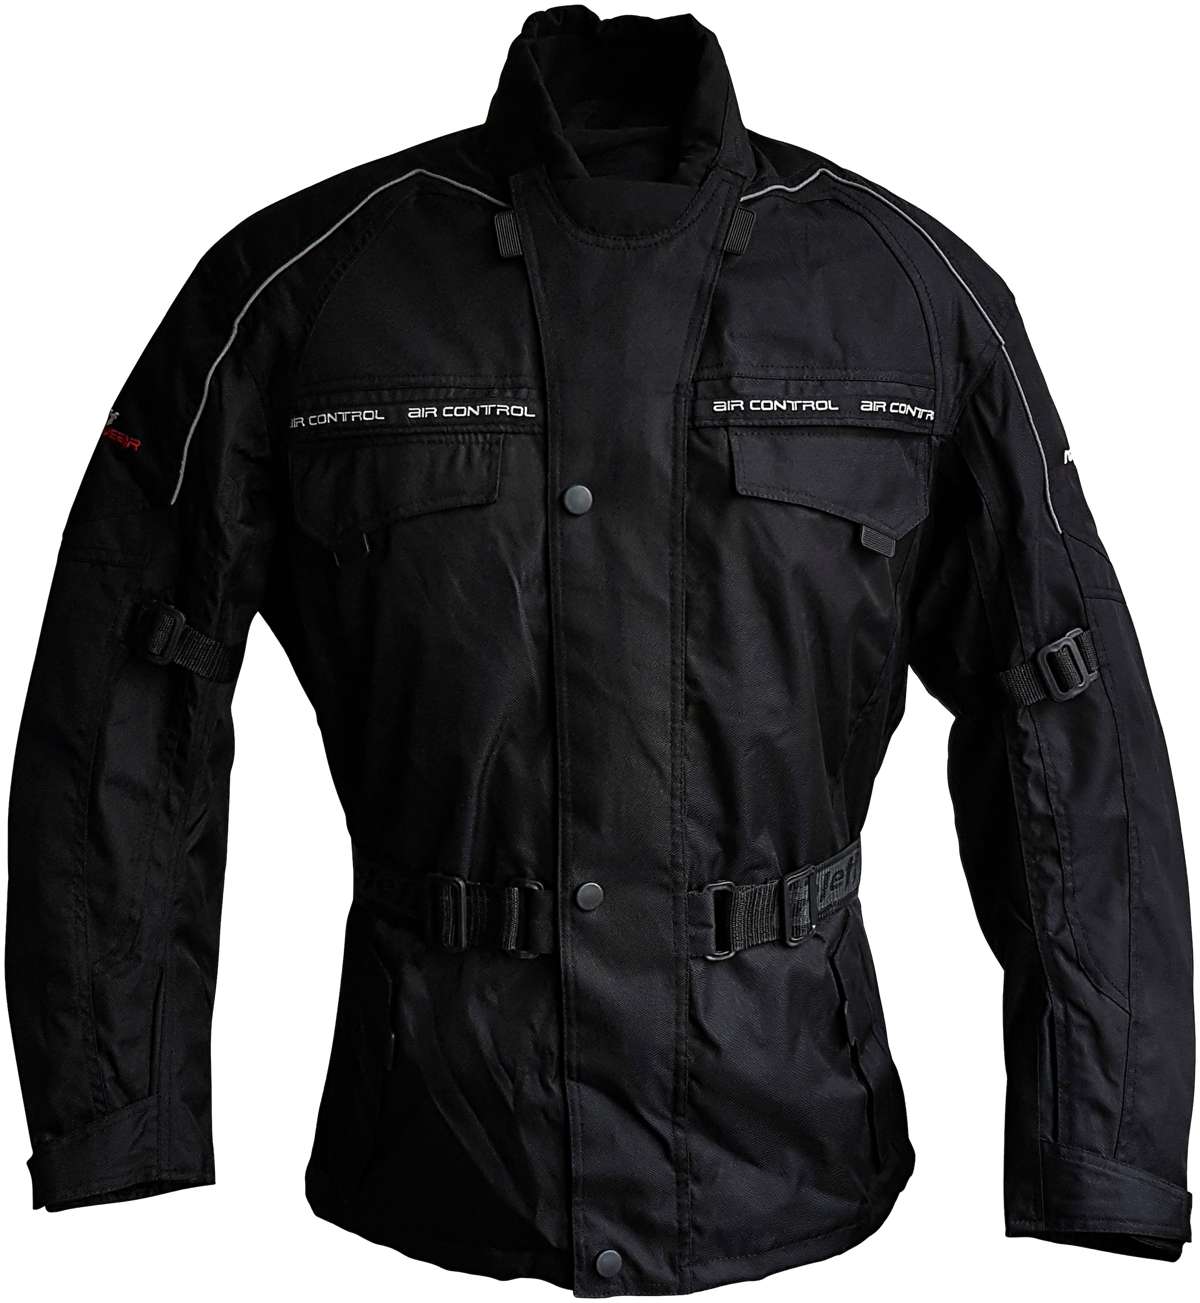 Мотоциклетная куртка, с защитой, 4 кармана, 3 вентиляционных отверстия.